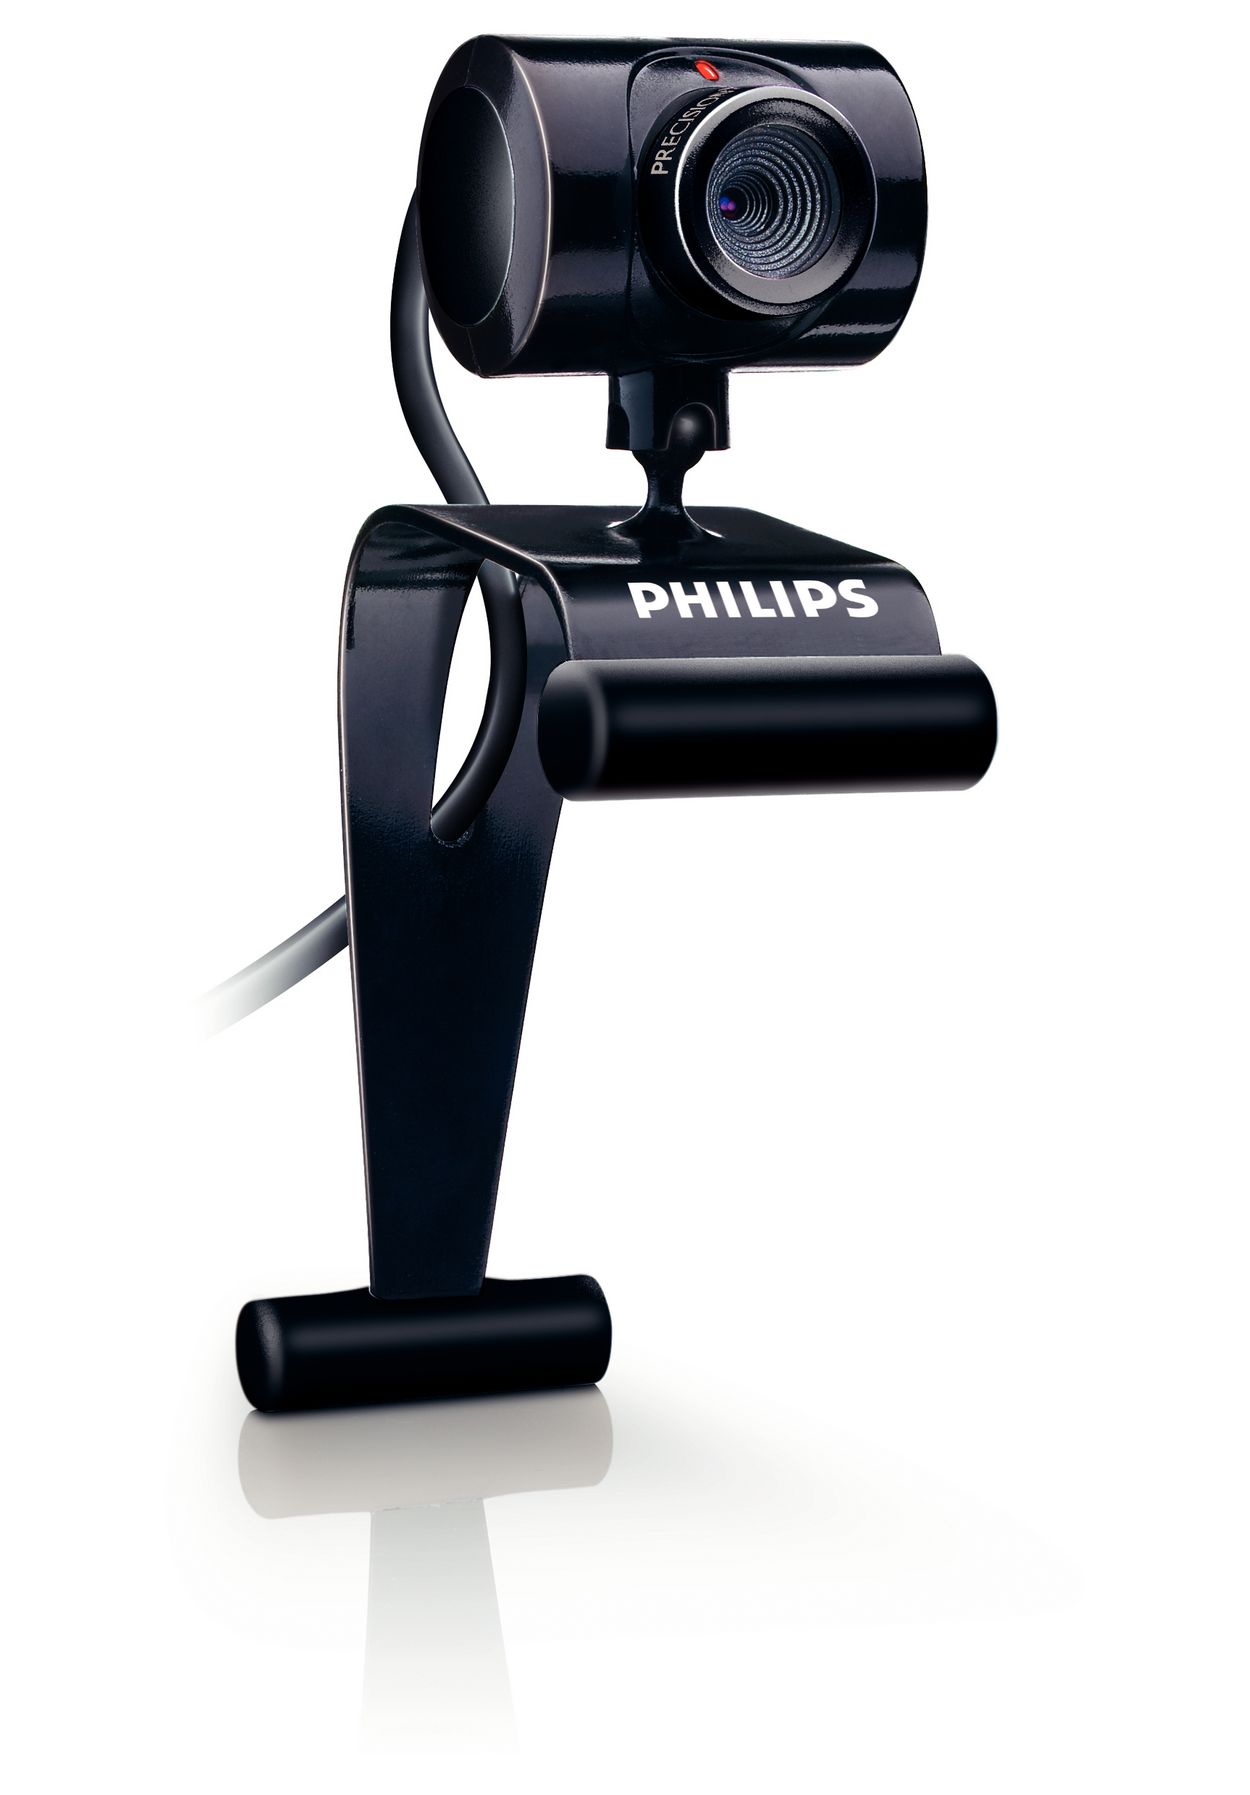 Buy The Philips Notebook Webcam Spc230nc00